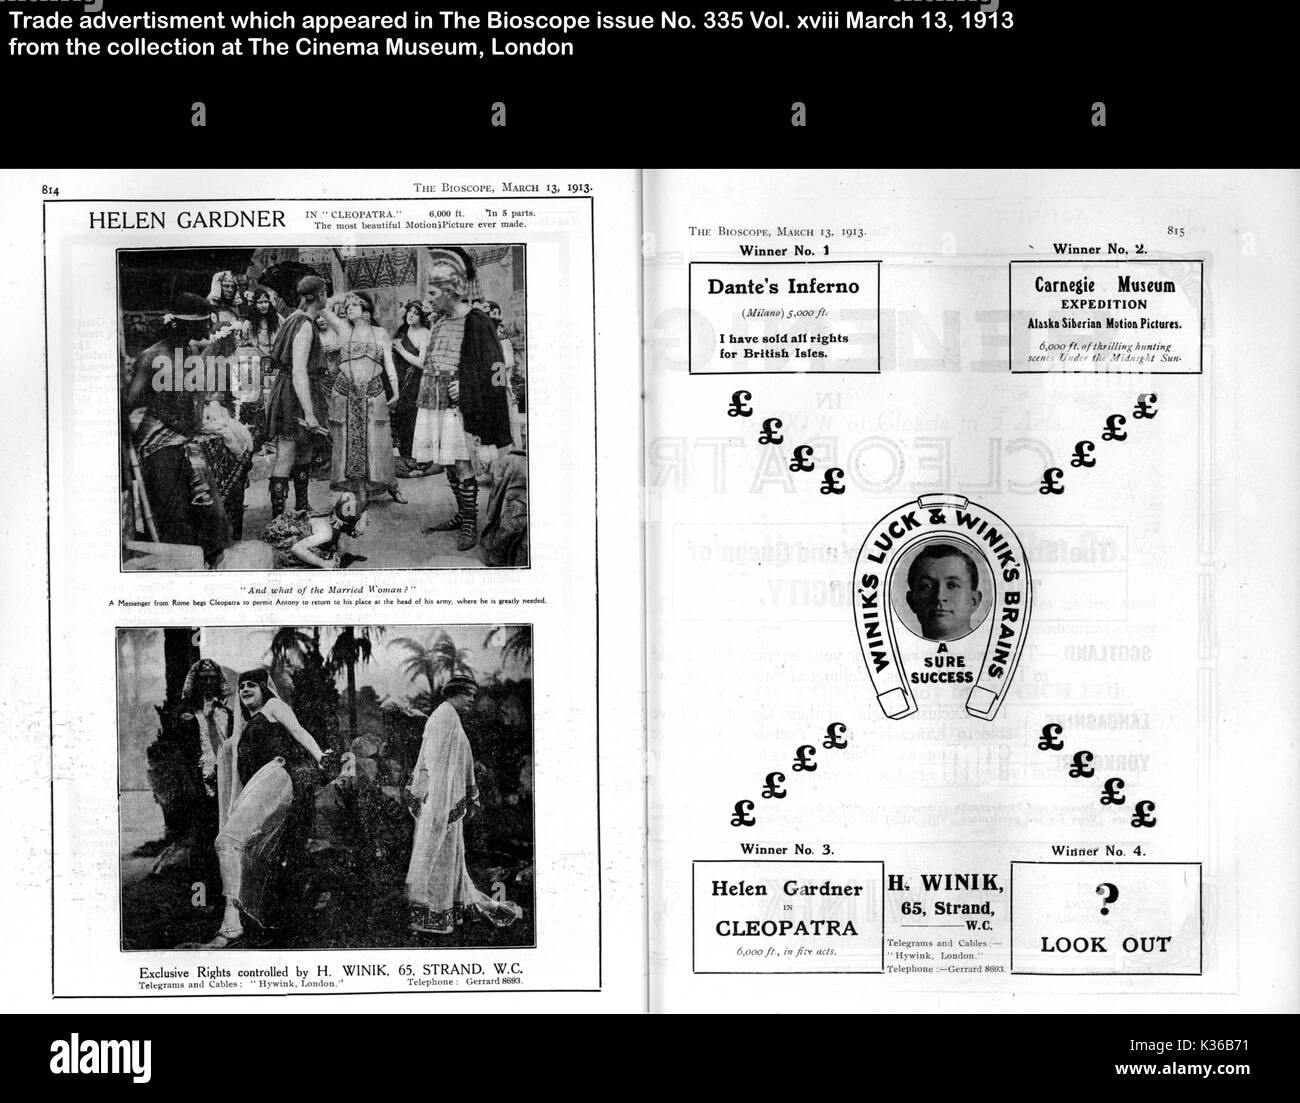 Pubblicità commerciale fonte il Bioscope problema n. 335 VOL XVIII marzo 13 1913 COLLEZIONE DEL MUSEO DEL CINEMA DI LONDRA Foto Stock